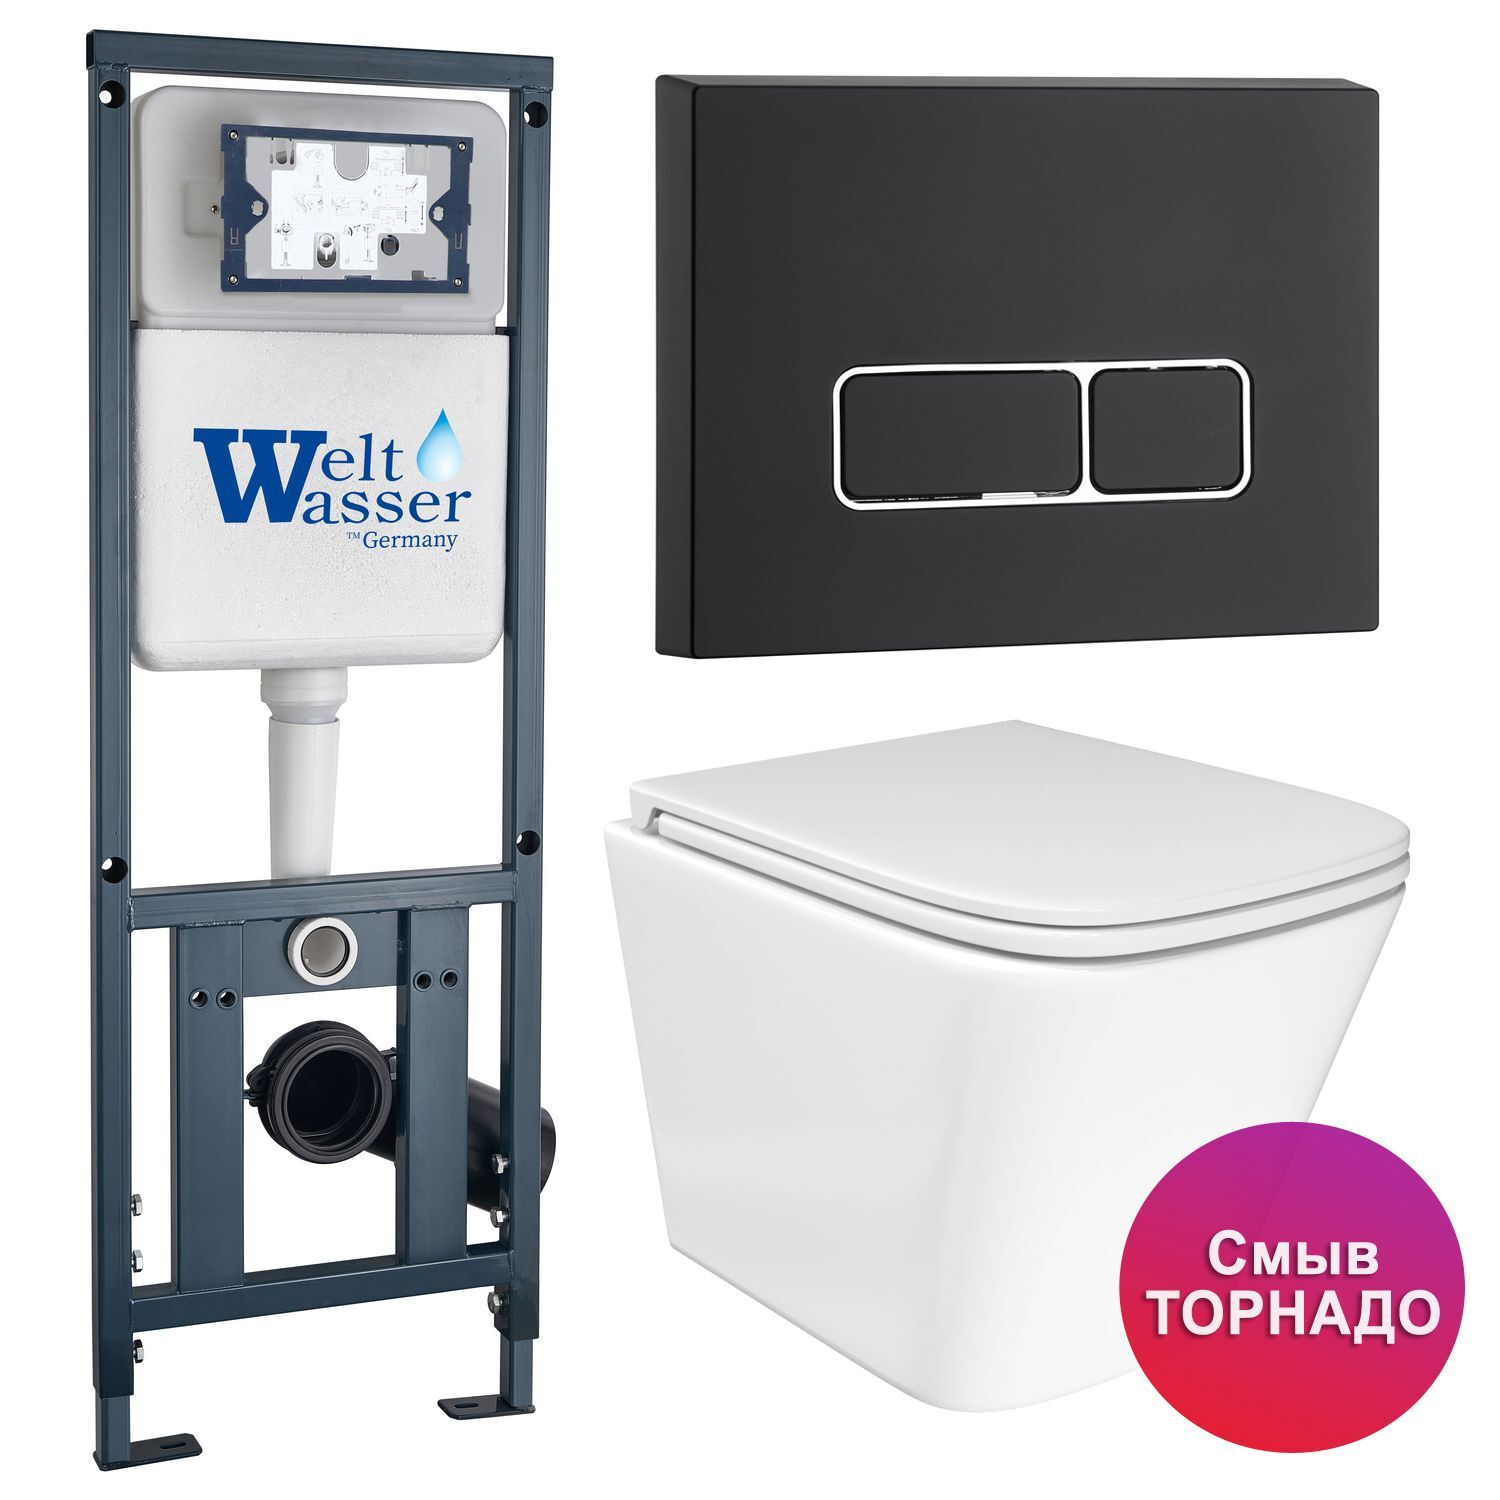 Комплект: Weltwasser Инсталляция Mar 410+Кнопка Mar 410 SE MT-BL черная+Verna T JK3031025 белый унитаз, смыв Торнадо